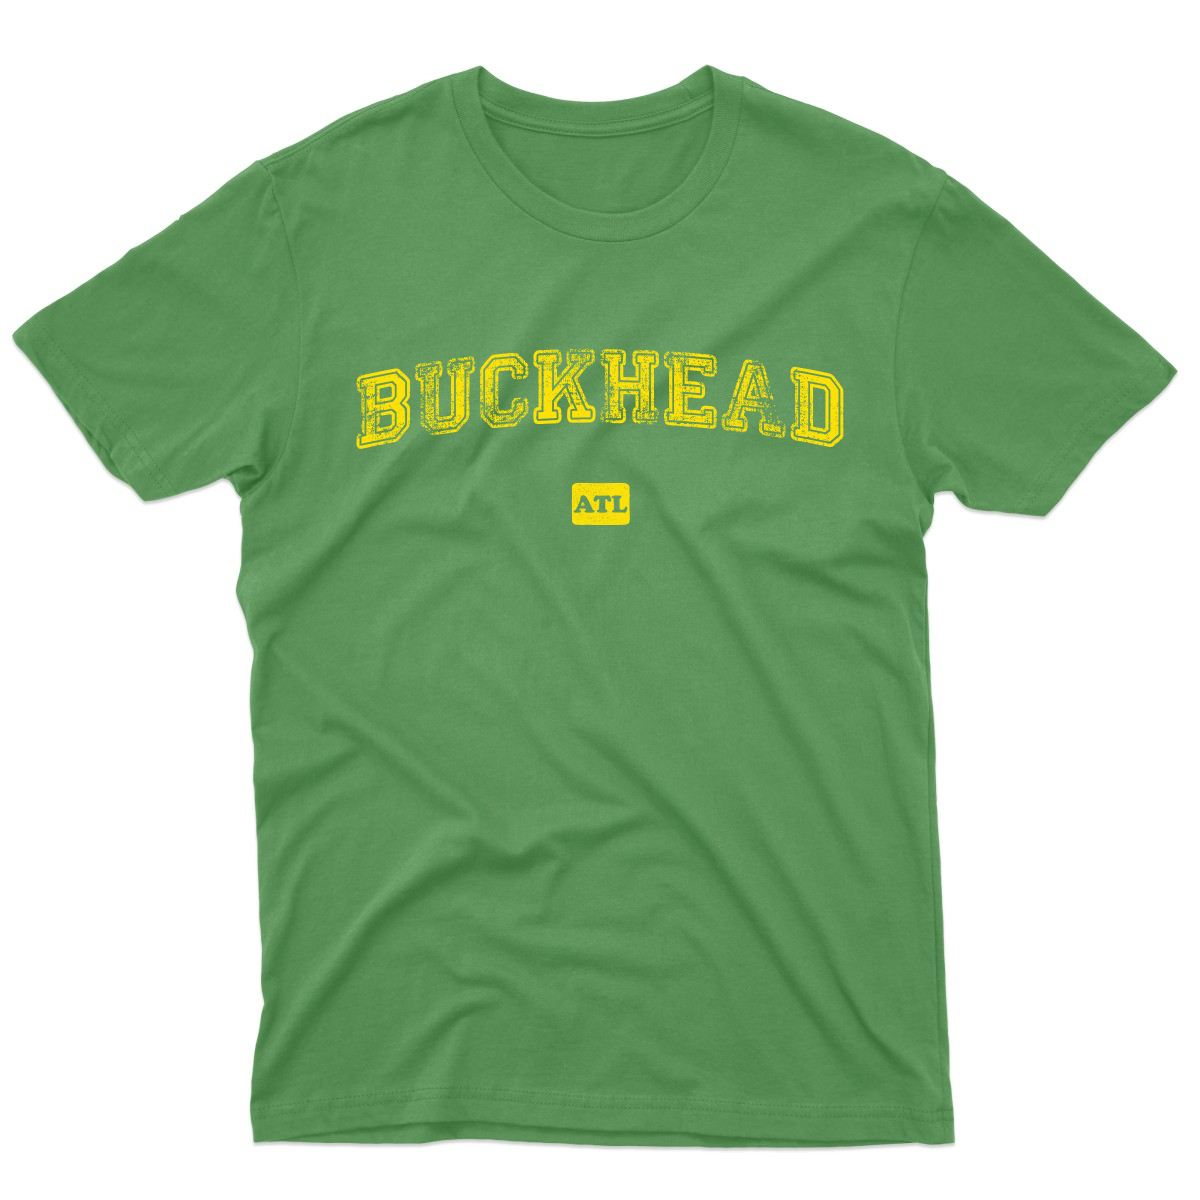 Buckhead ATL Represent Men's T-shirt | Green